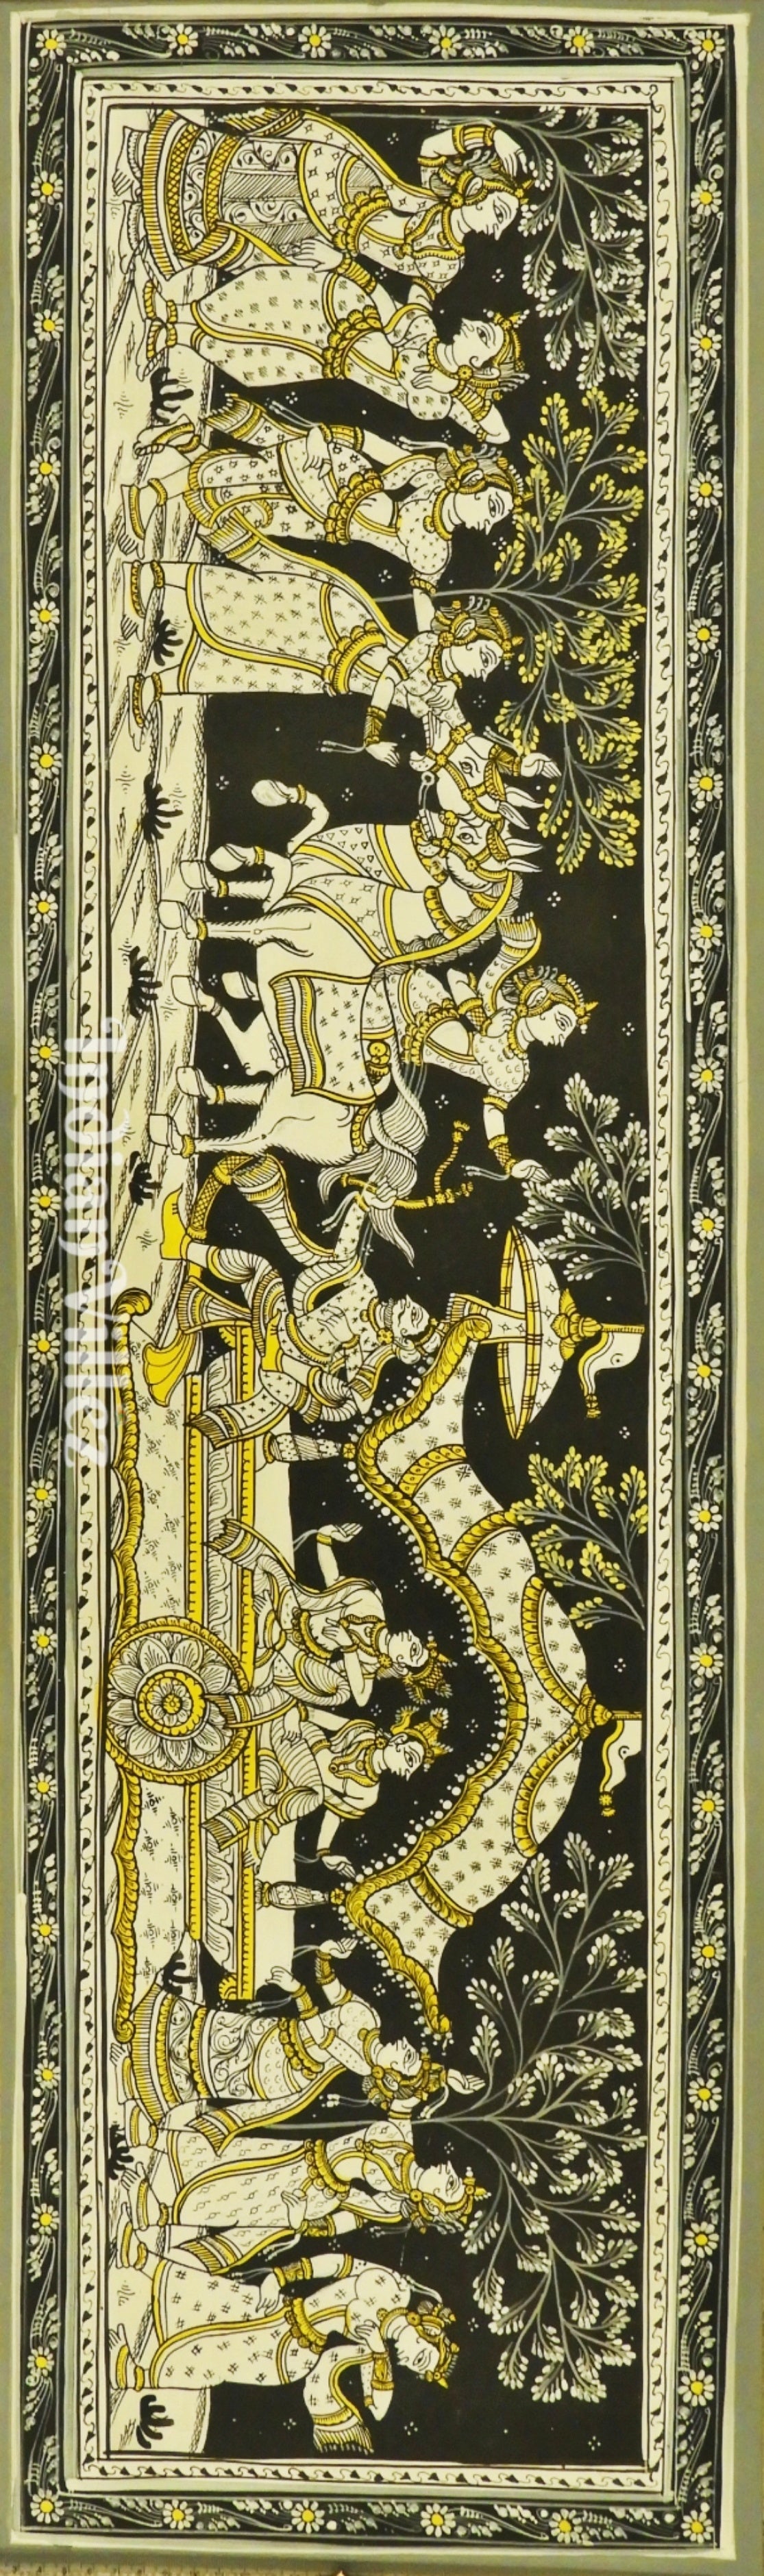 Mathura Vijay Shri Krishna Theme Pattachitra Painting